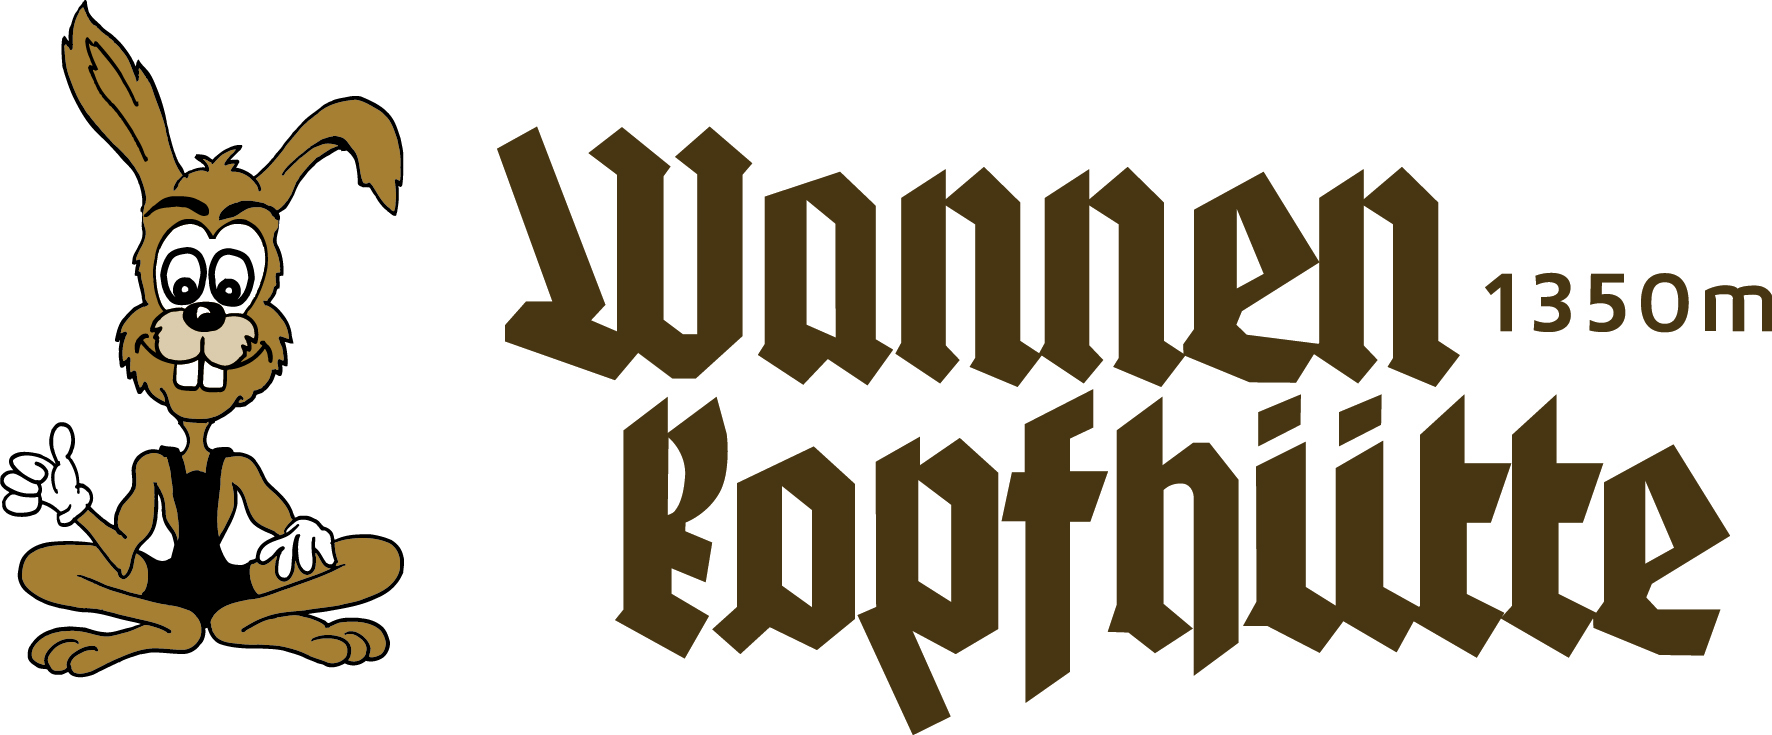 Logo Wannenkopfhütte